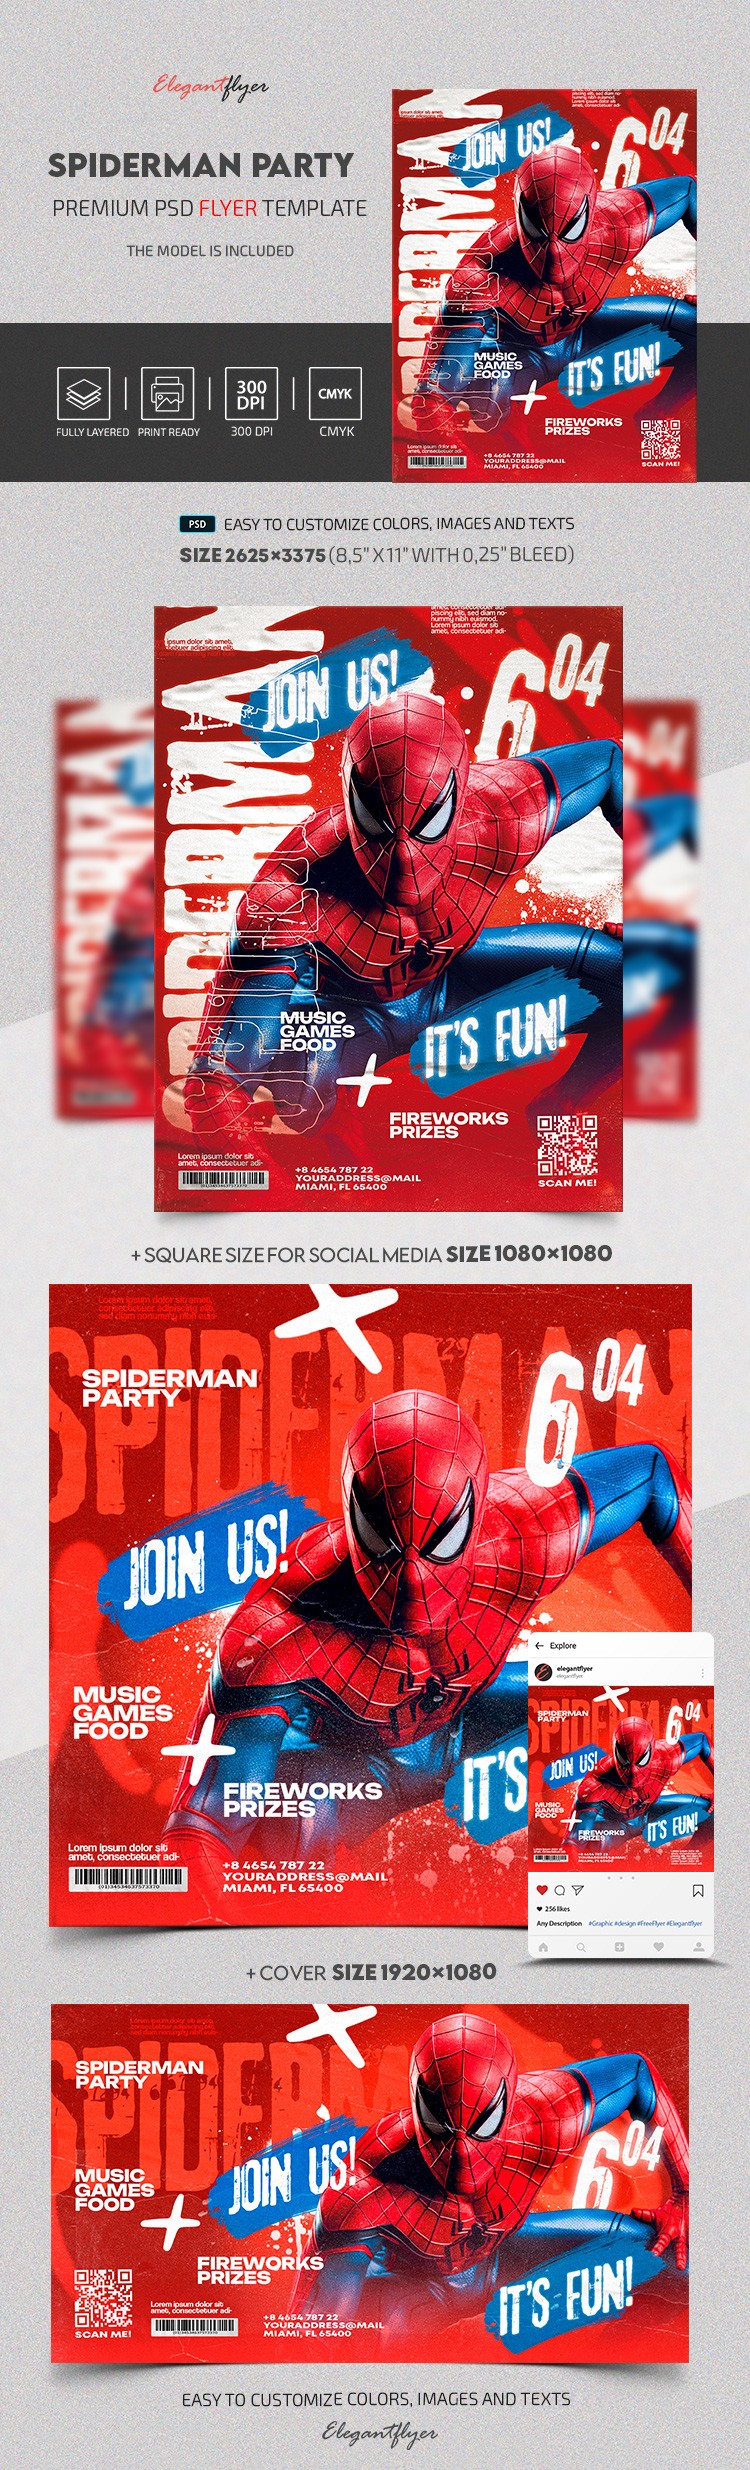 Spiderman Invitation by ElegantFlyer